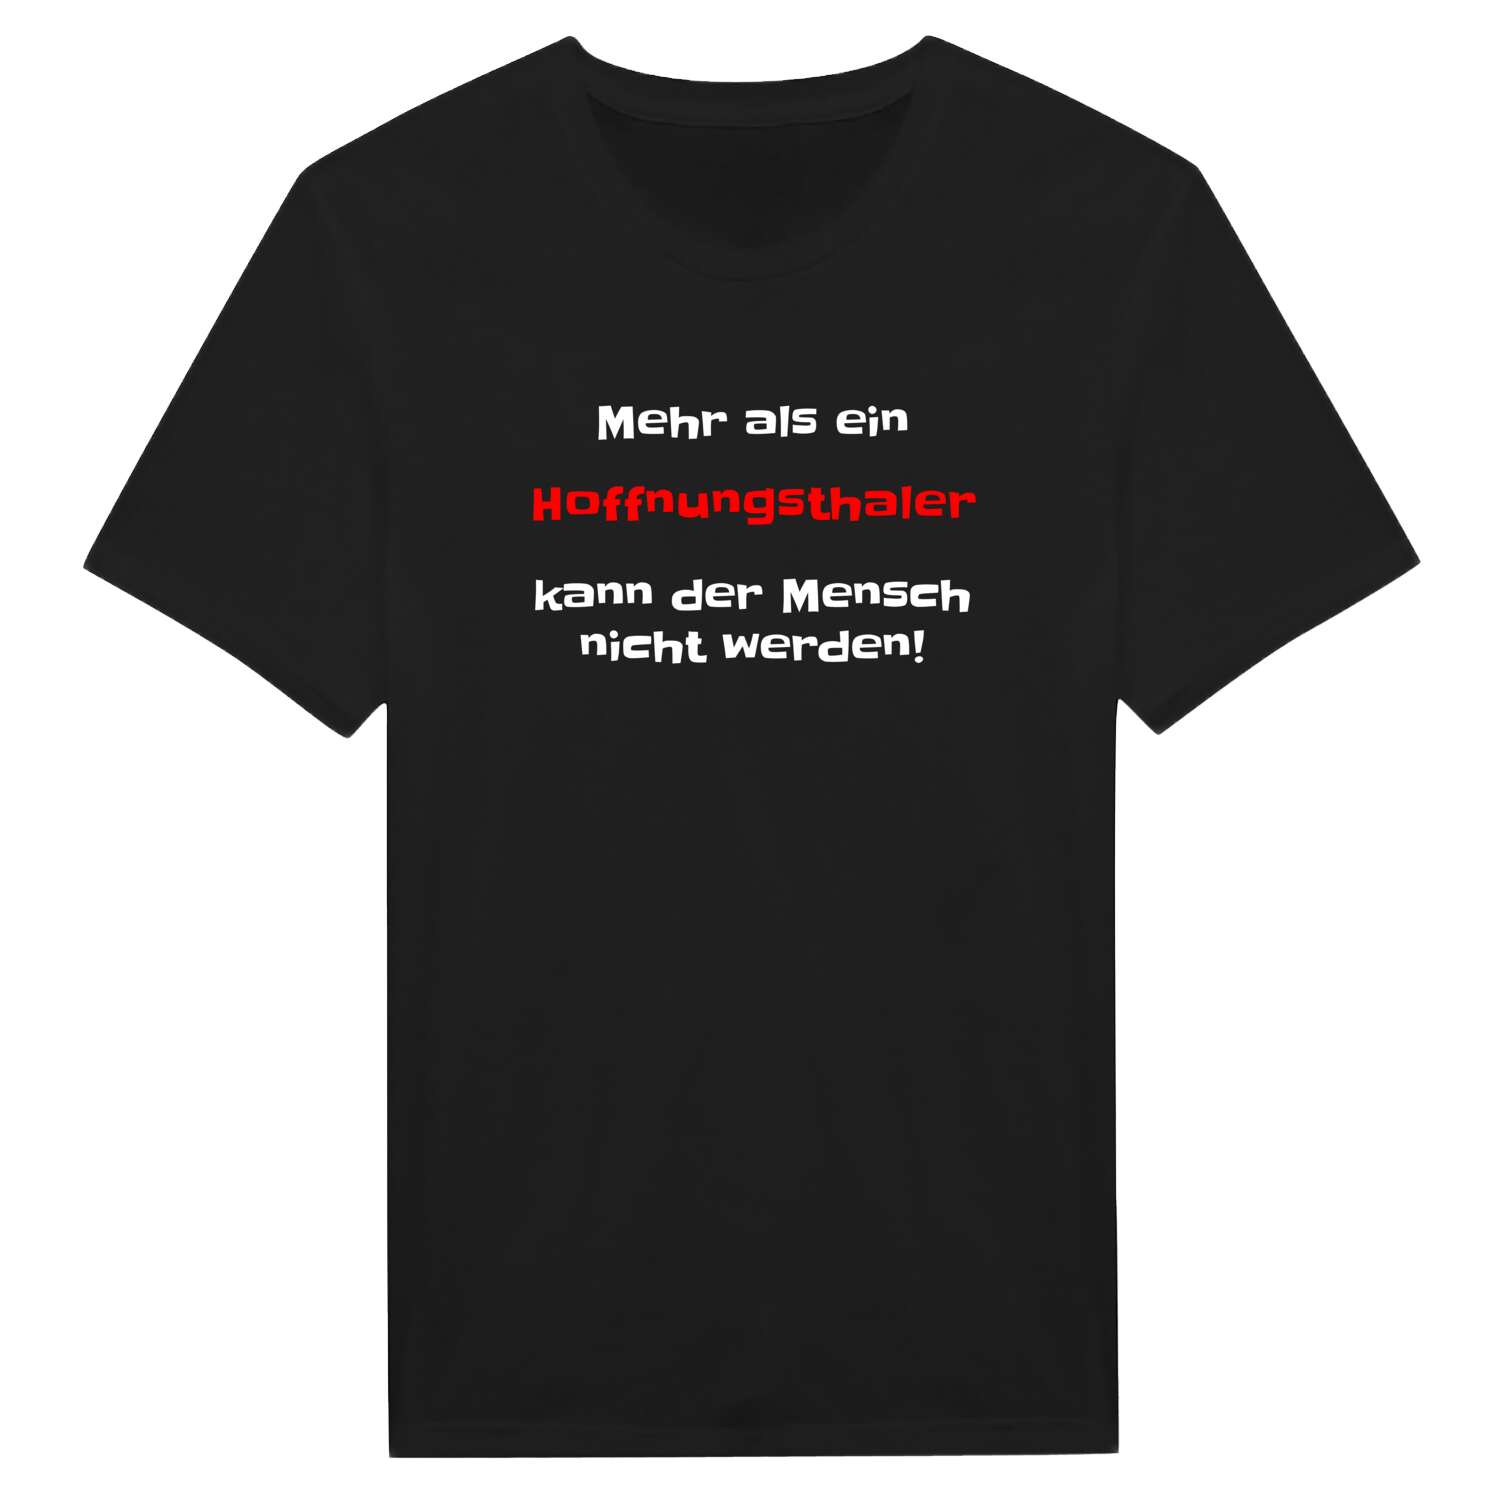 Hoffnungsthal T-Shirt »Mehr als ein«